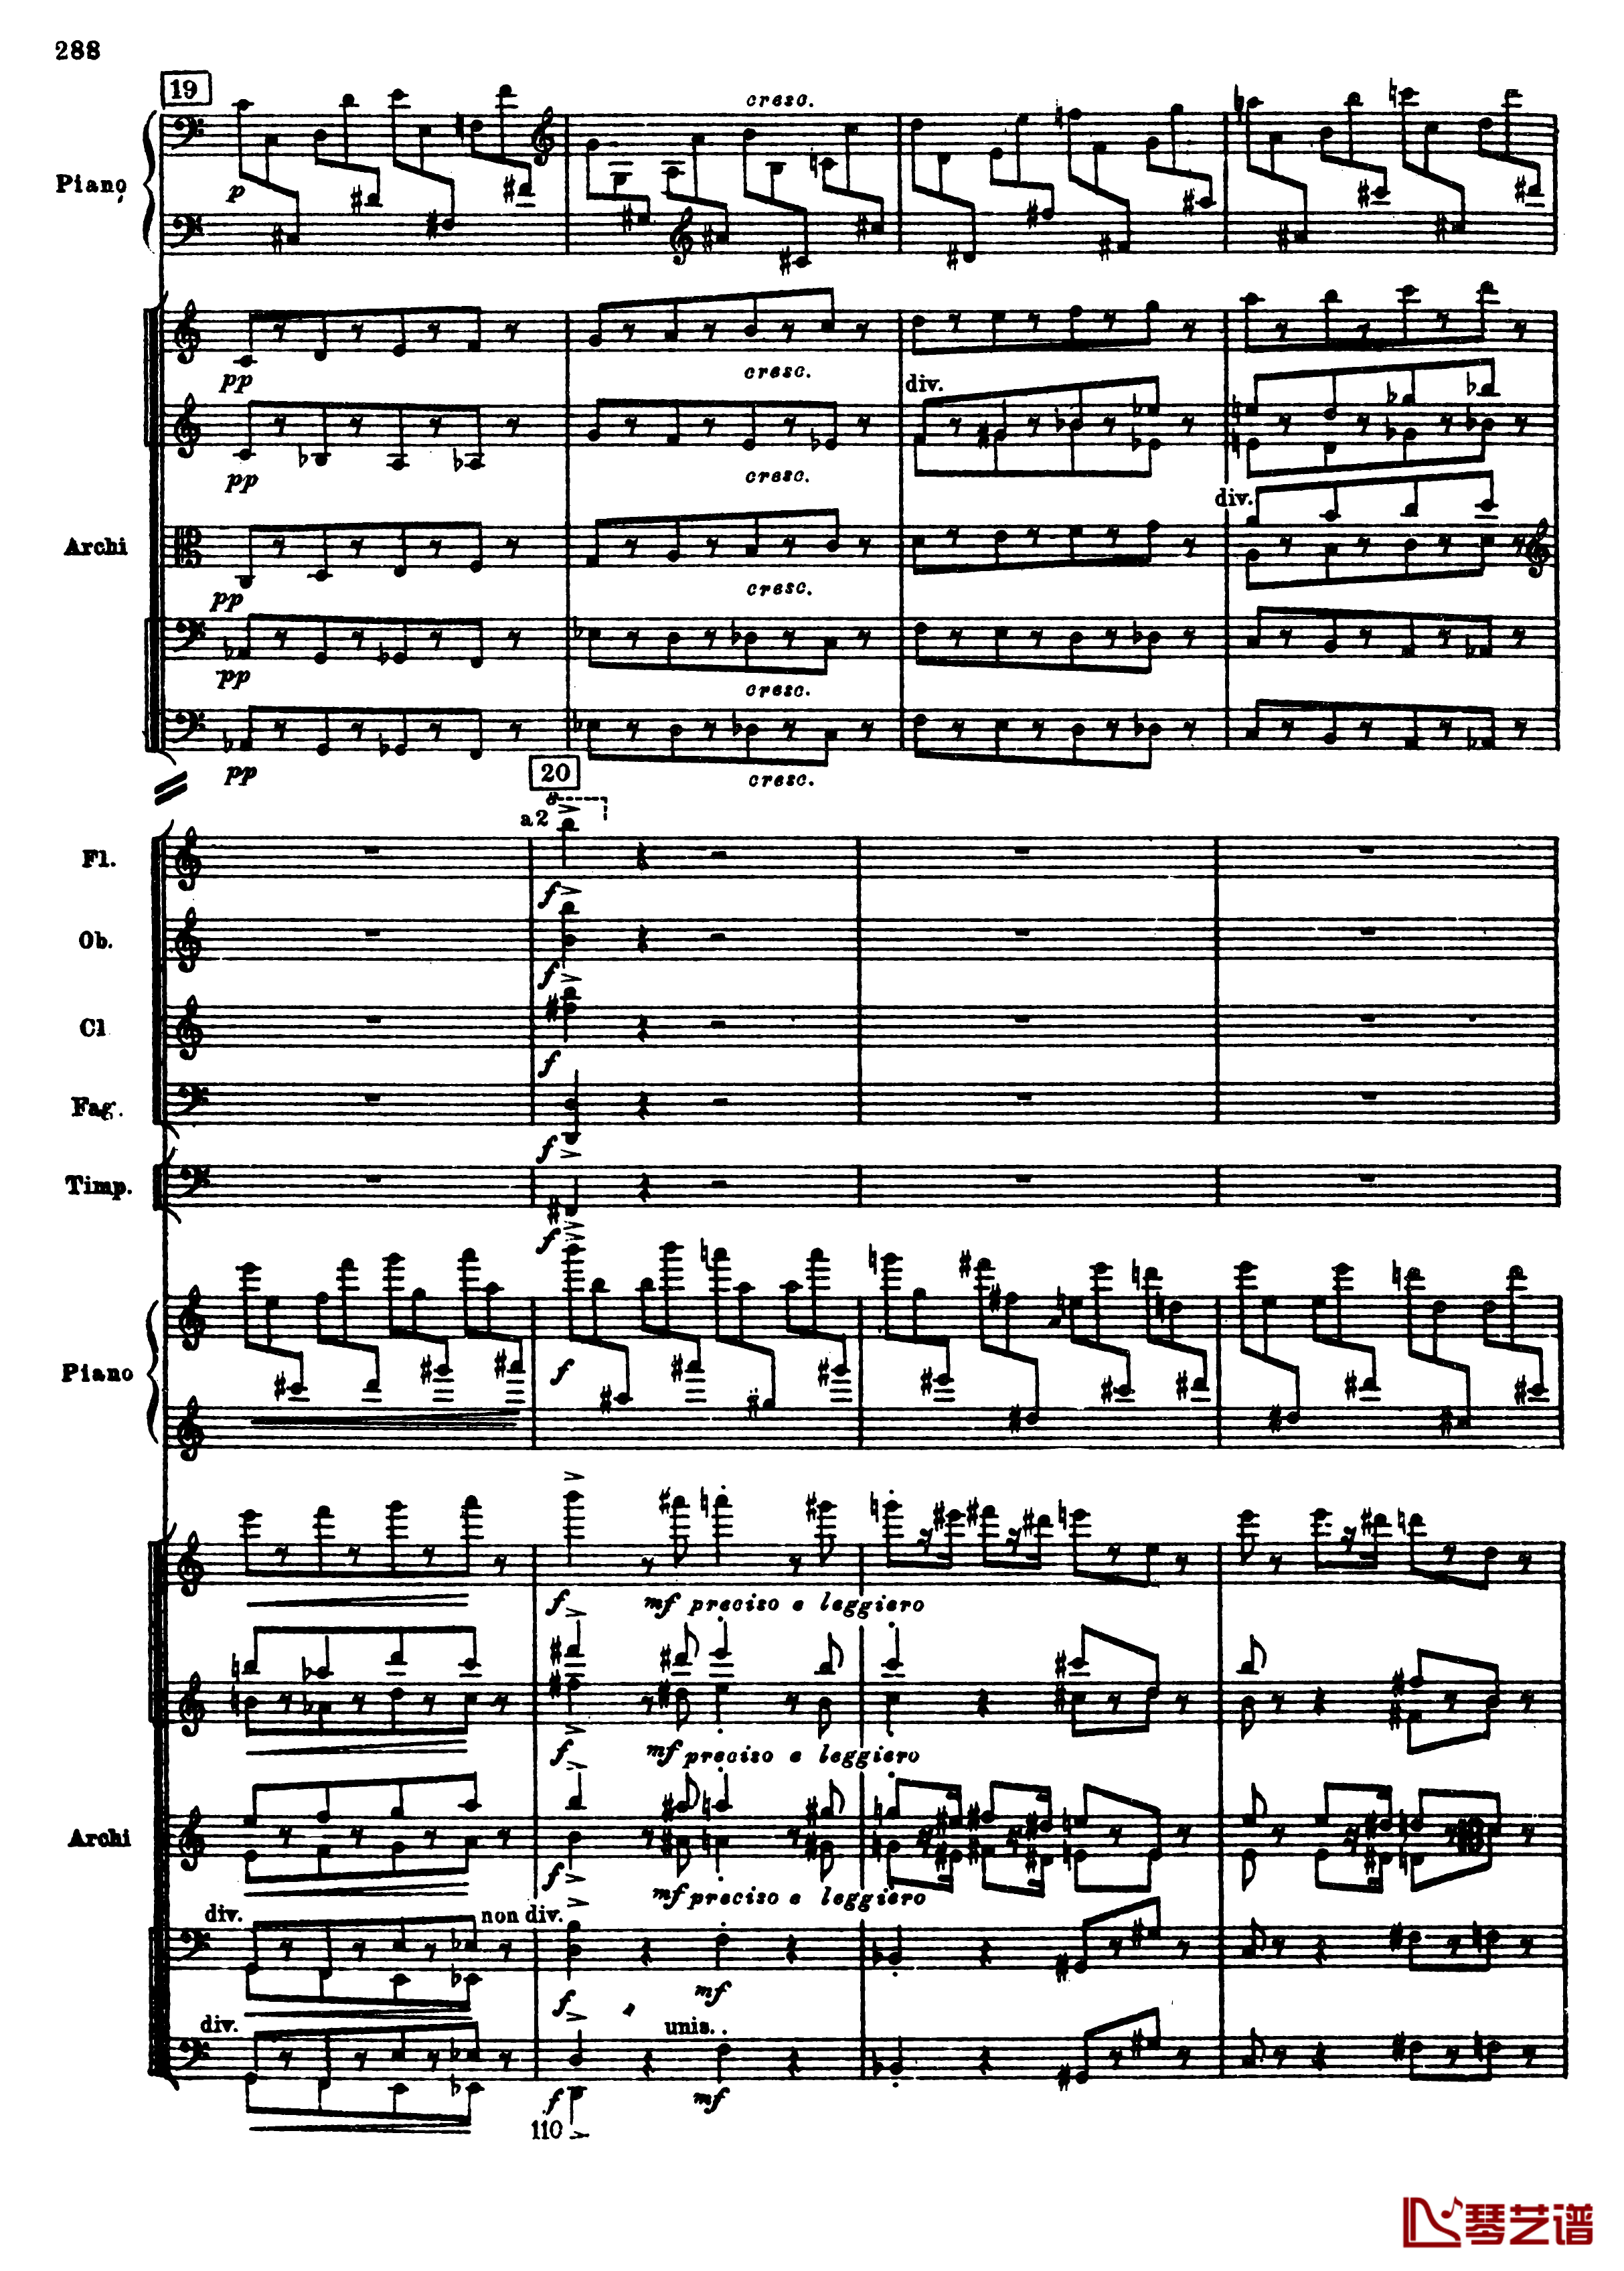 普罗科菲耶夫第三钢琴协奏曲钢琴谱-总谱-普罗科非耶夫20